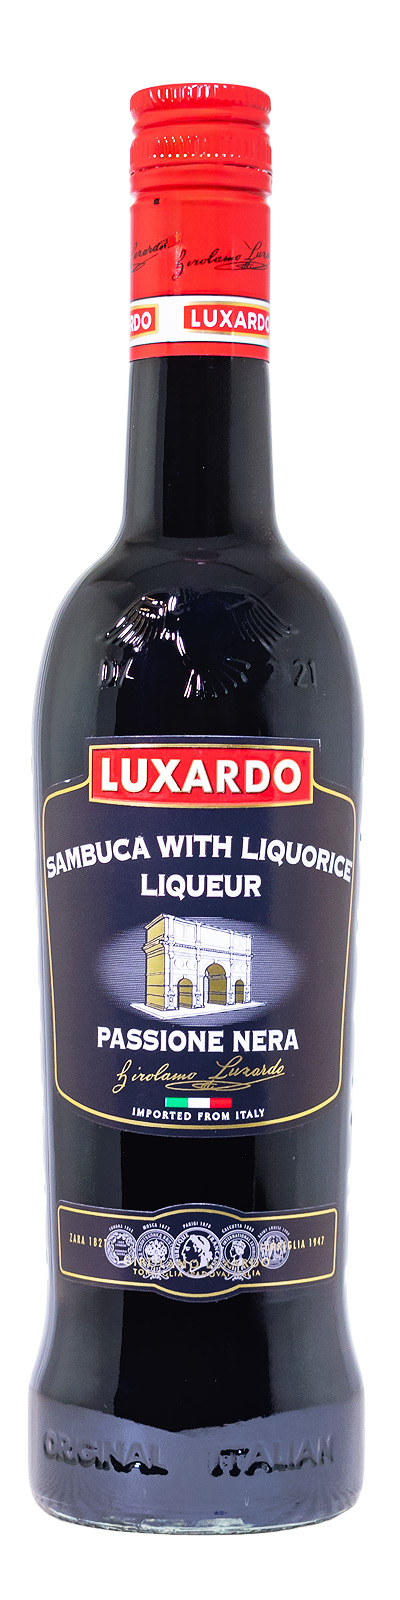 Luxardo Passione Nera - 0,7L 38% vol